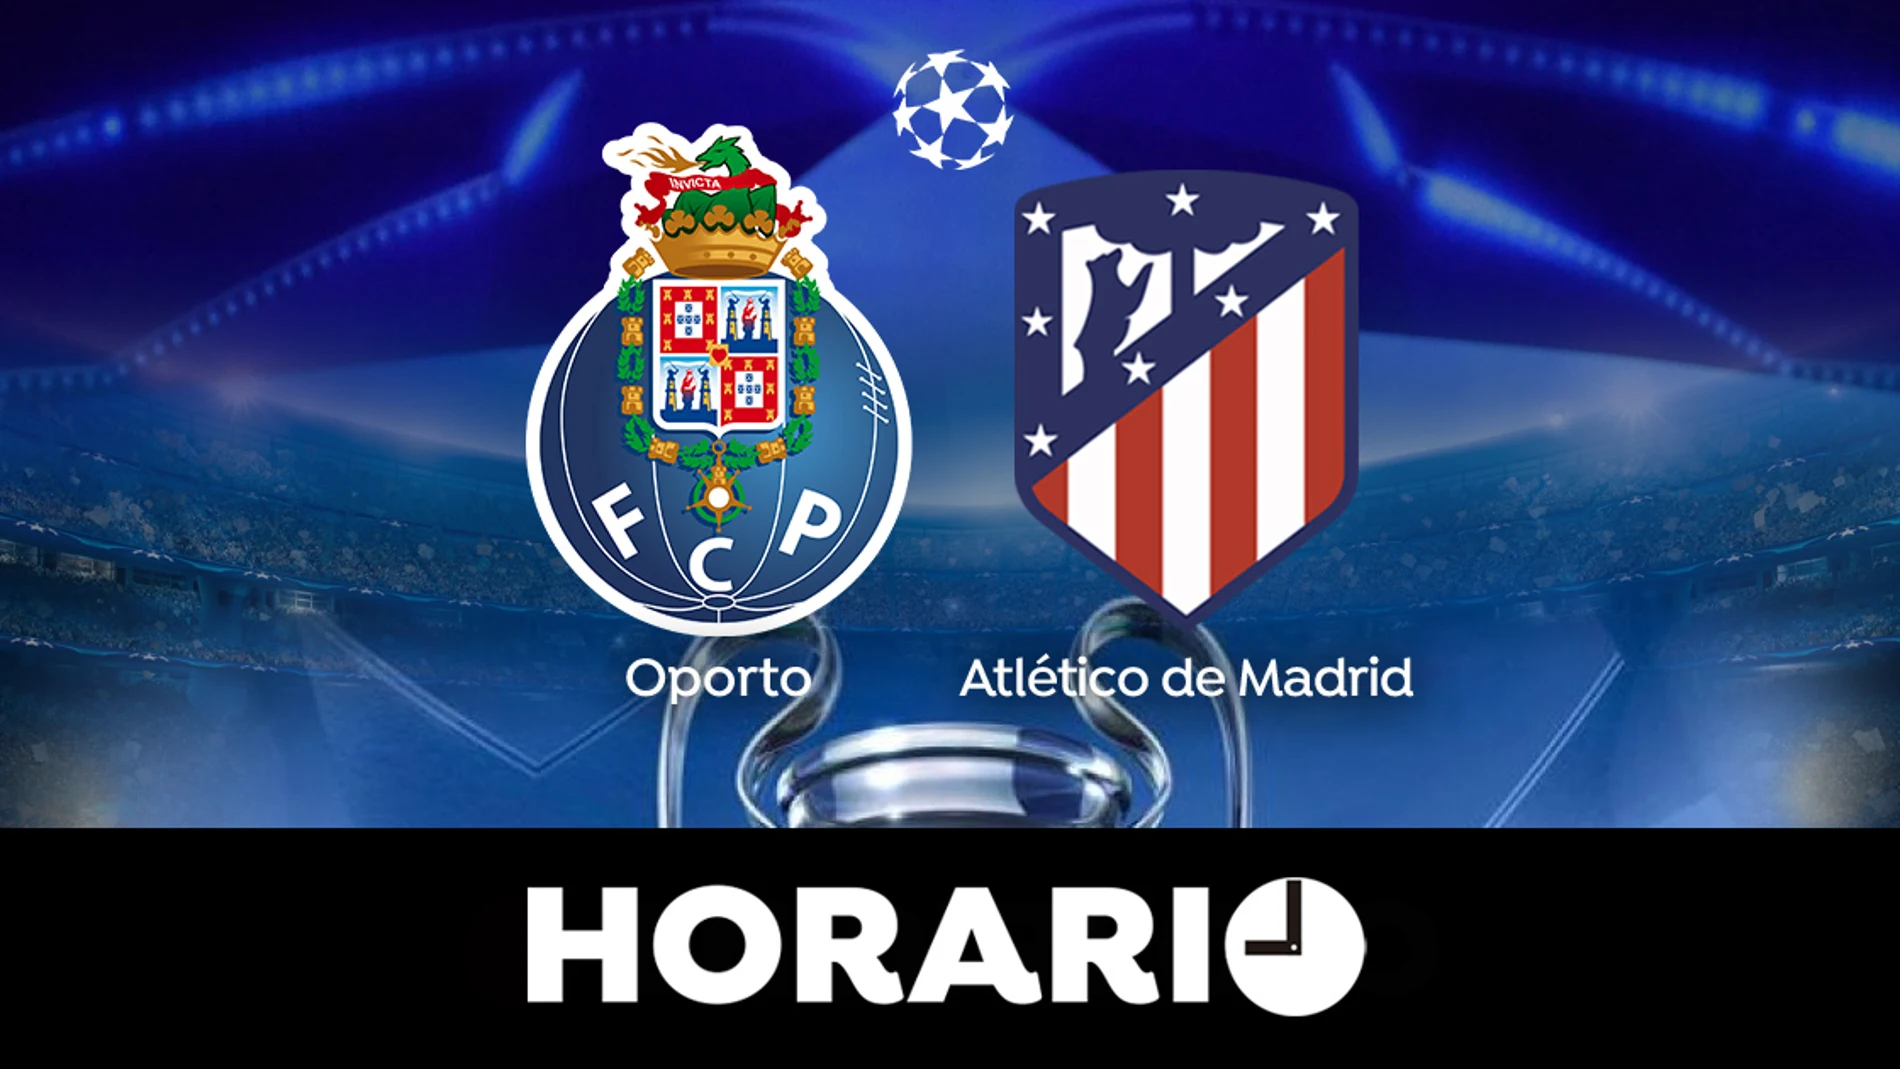 Oporto - Atlético de Madrid: Horario y dónde ver el partido de la Champions League, en directo